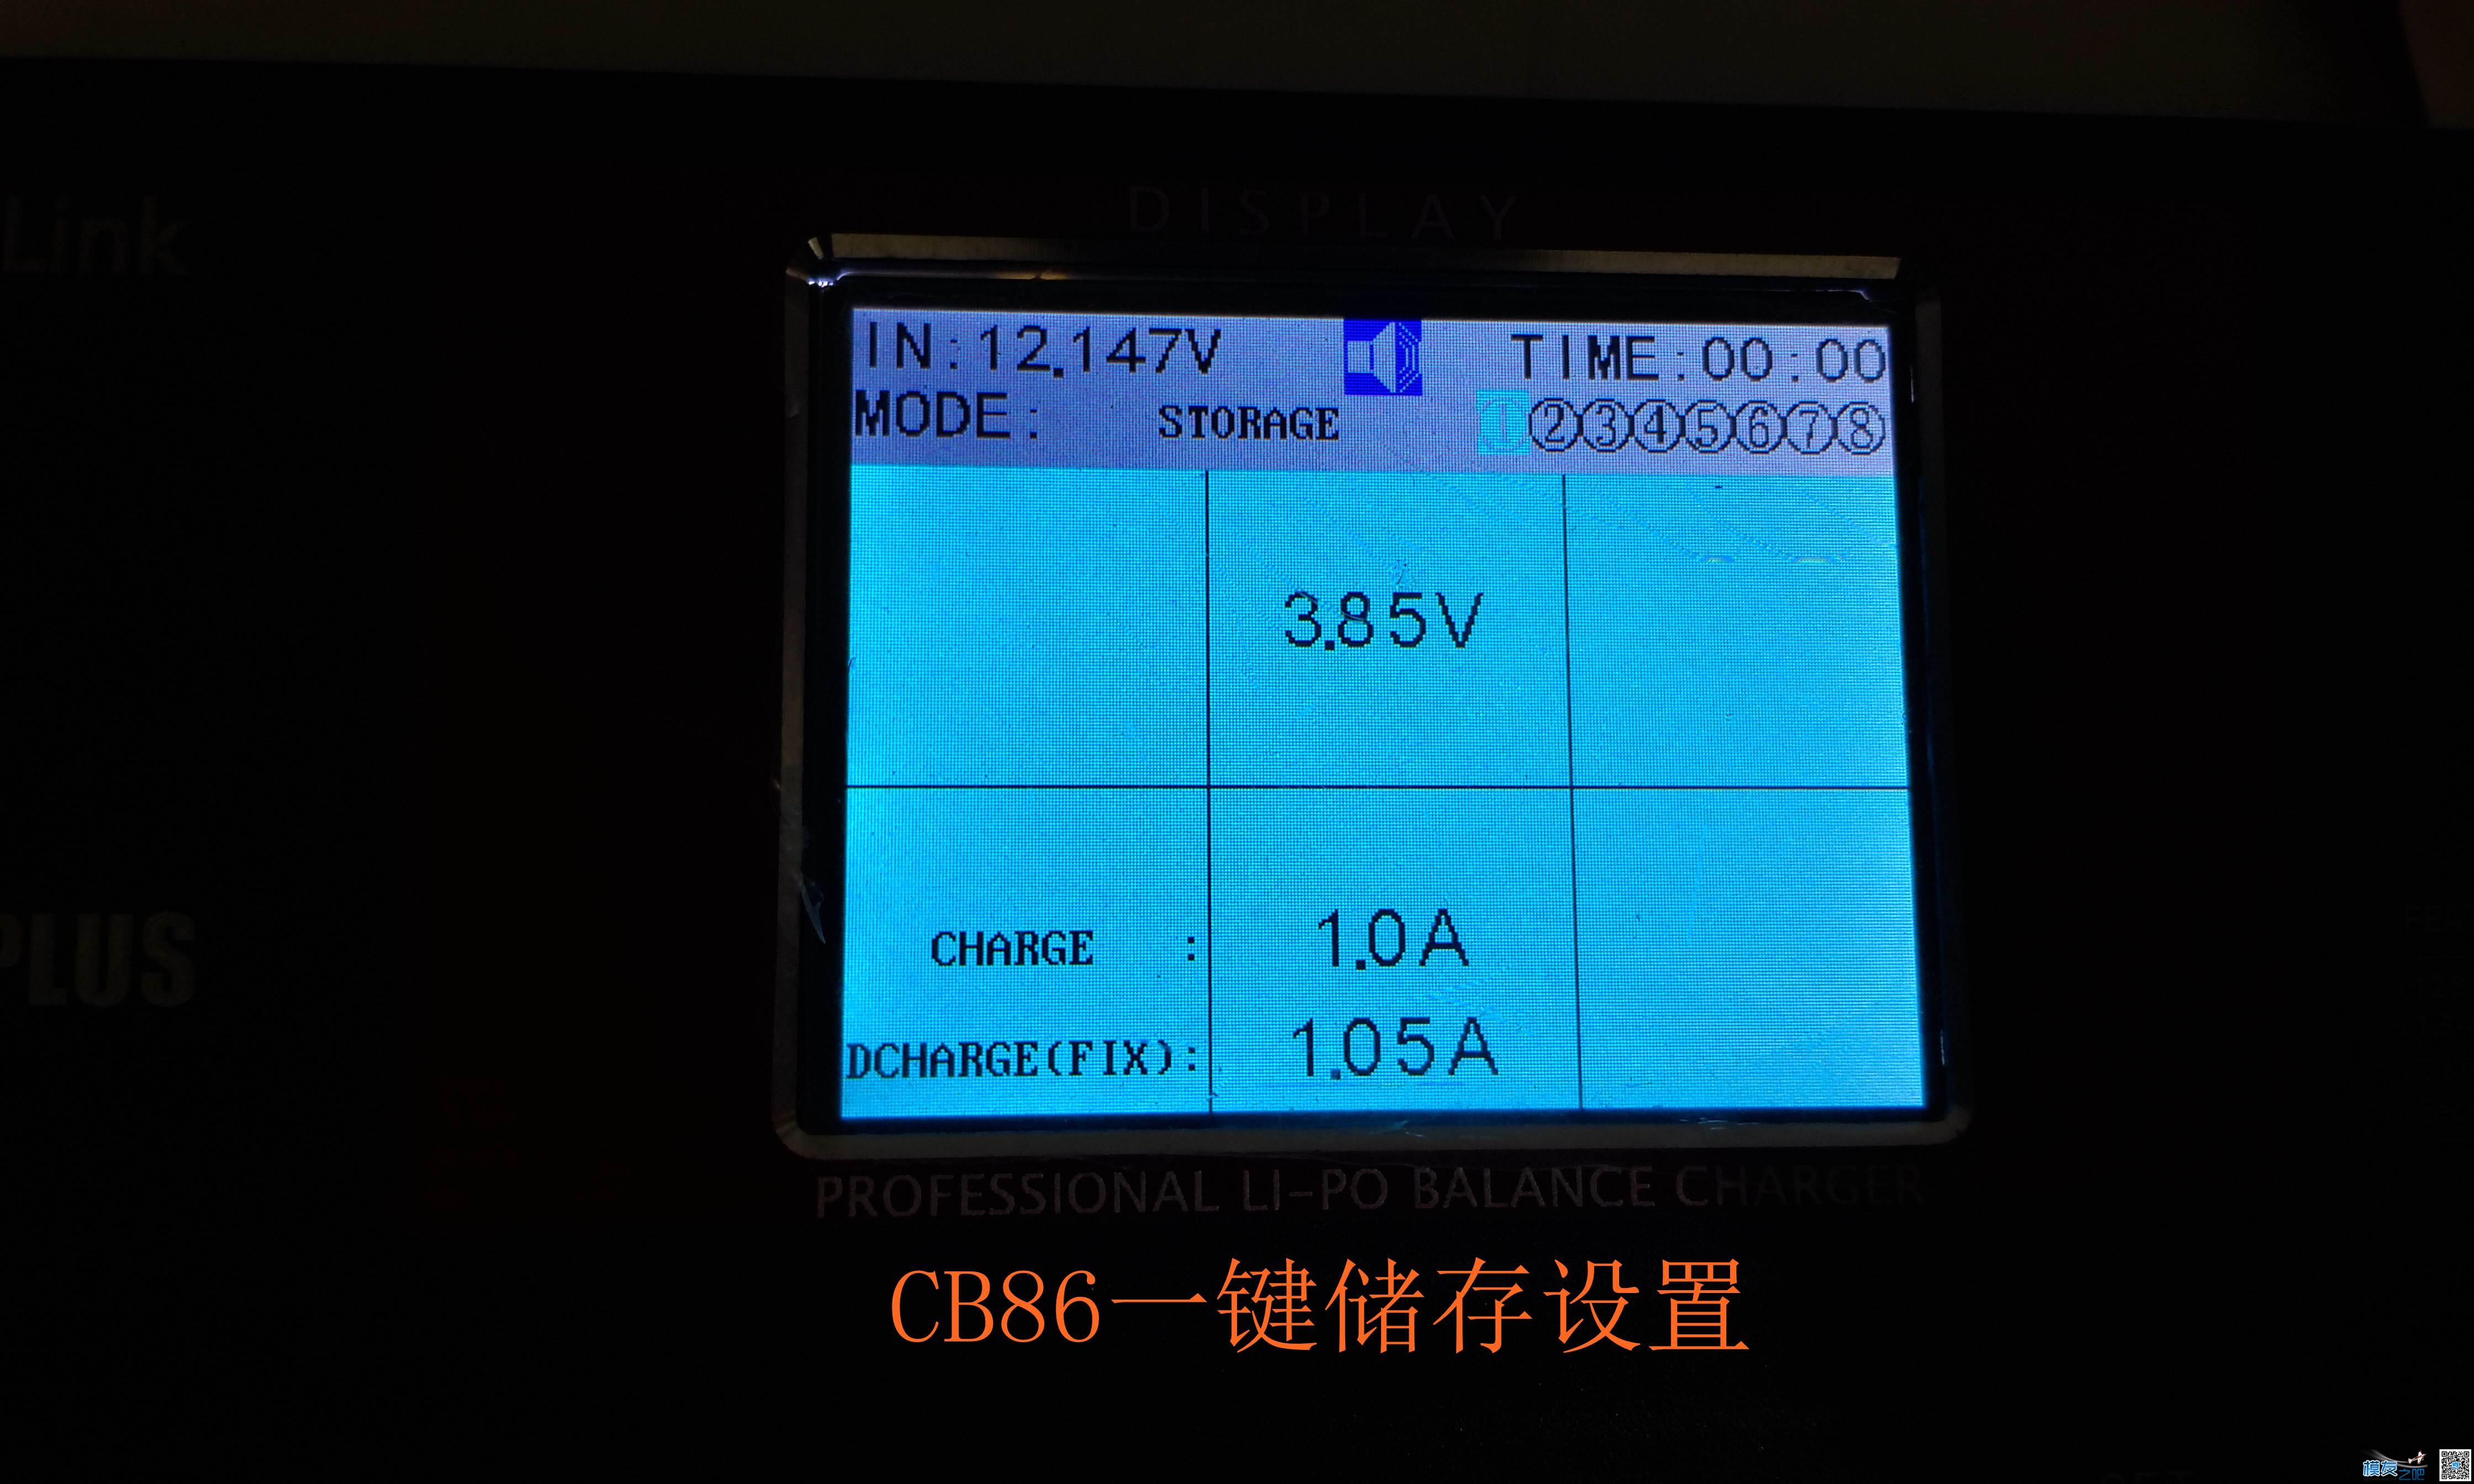 乐迪CP620开箱与CB86PLUS对比测试 电池,充电器,乐迪,固件,html 作者:455090630 3821 